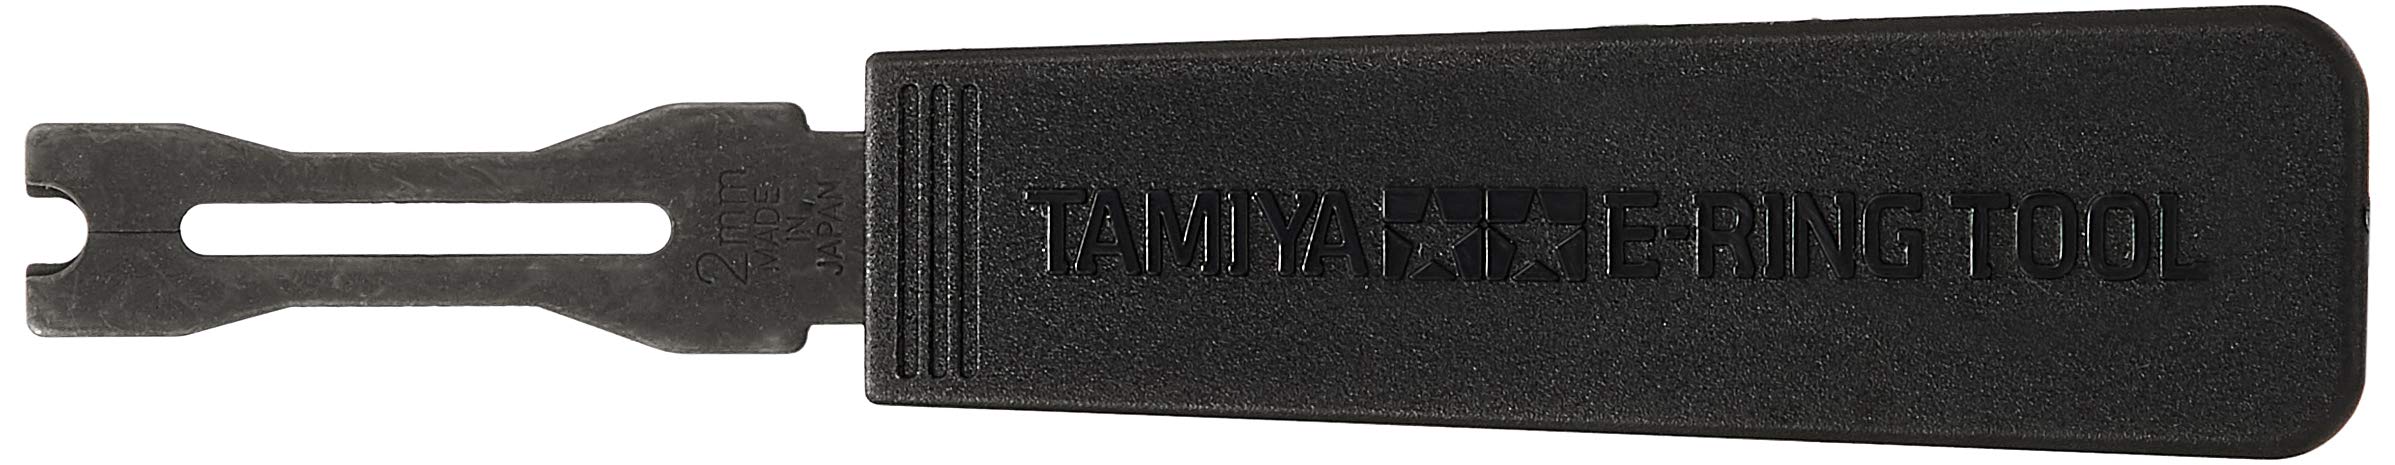 タミヤ(TAMIYA) クラフトツールシリーズ No.32 Eリングセッター 2mm用 プラモデル用工具 74032